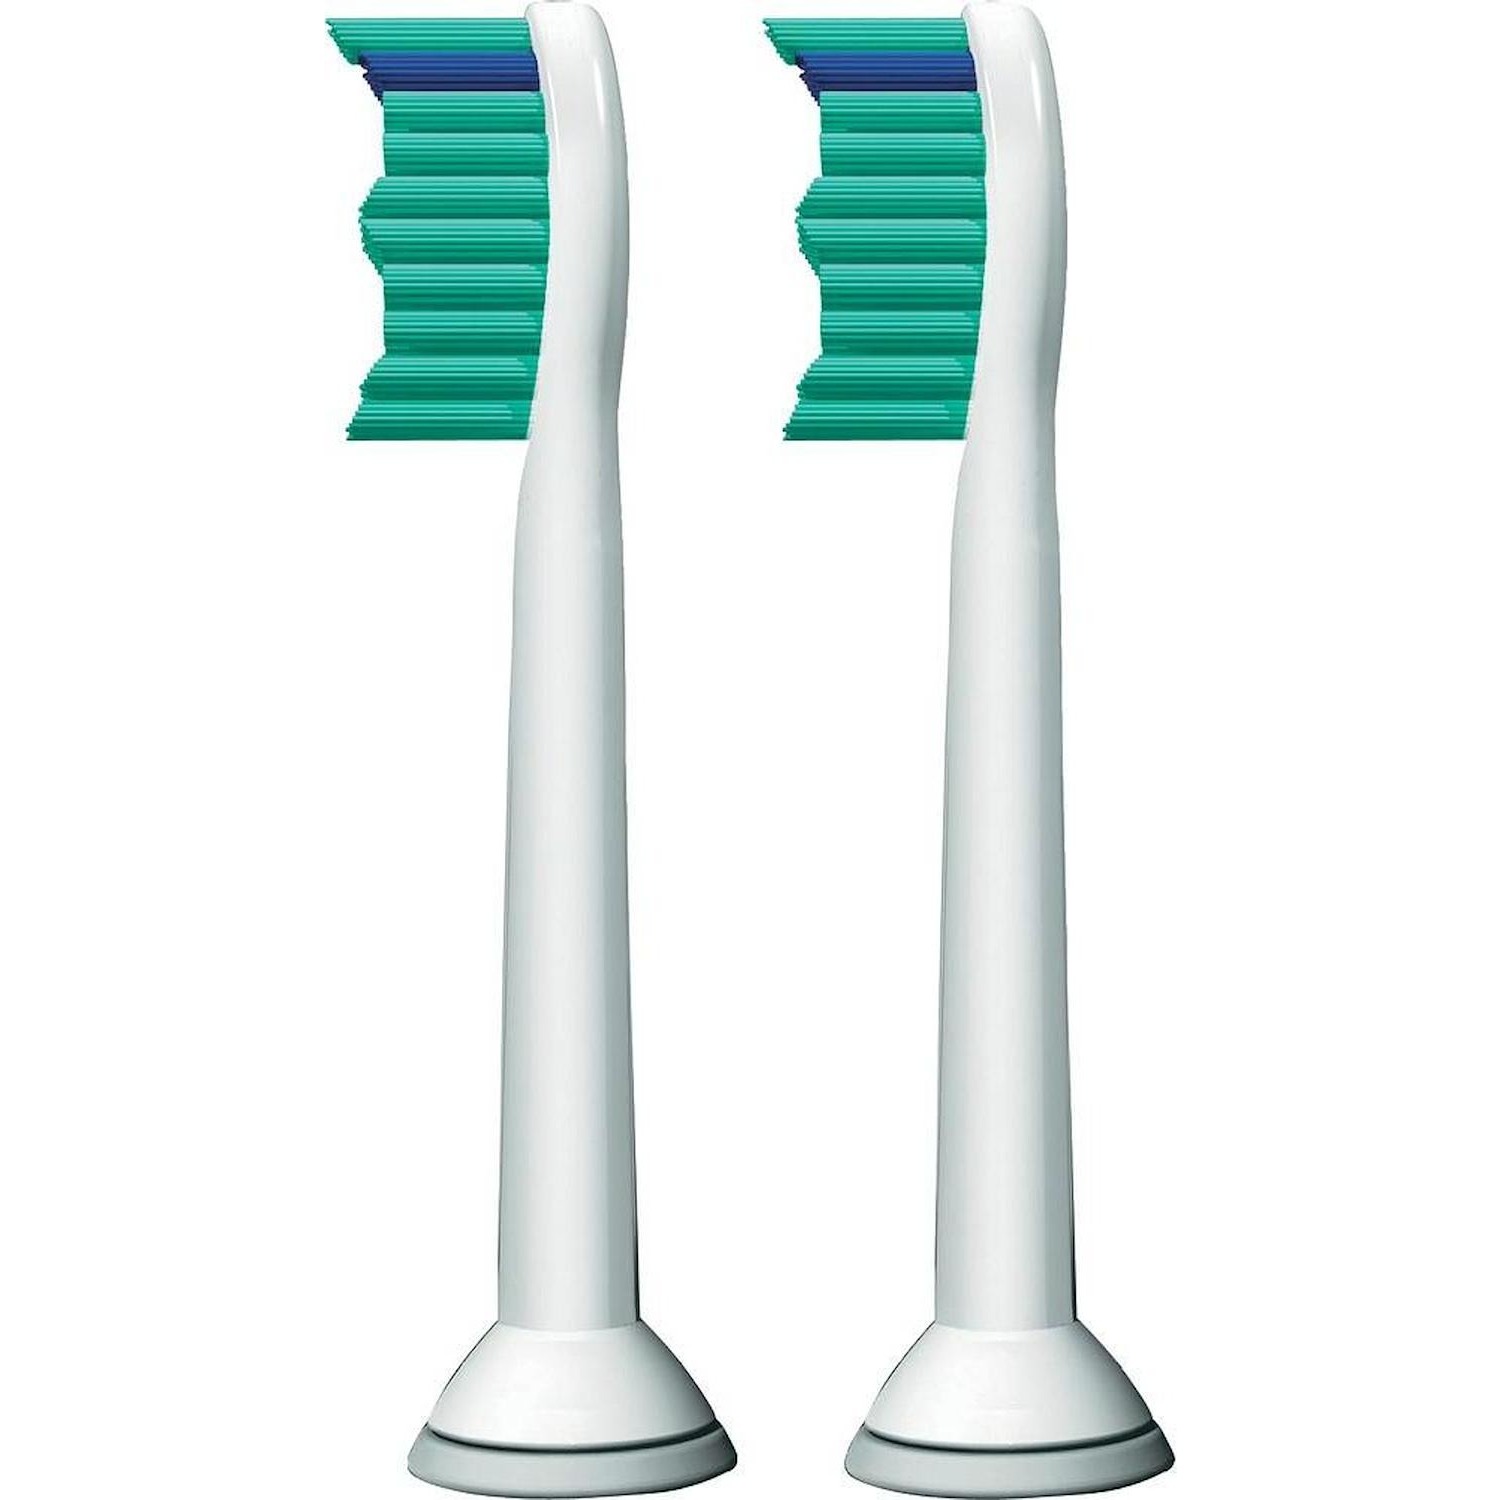 Immagine per Testina di ricambio spazzolino elettrico Philips sonicare standard HX6012/07 confezione 2pz da DIMOStore